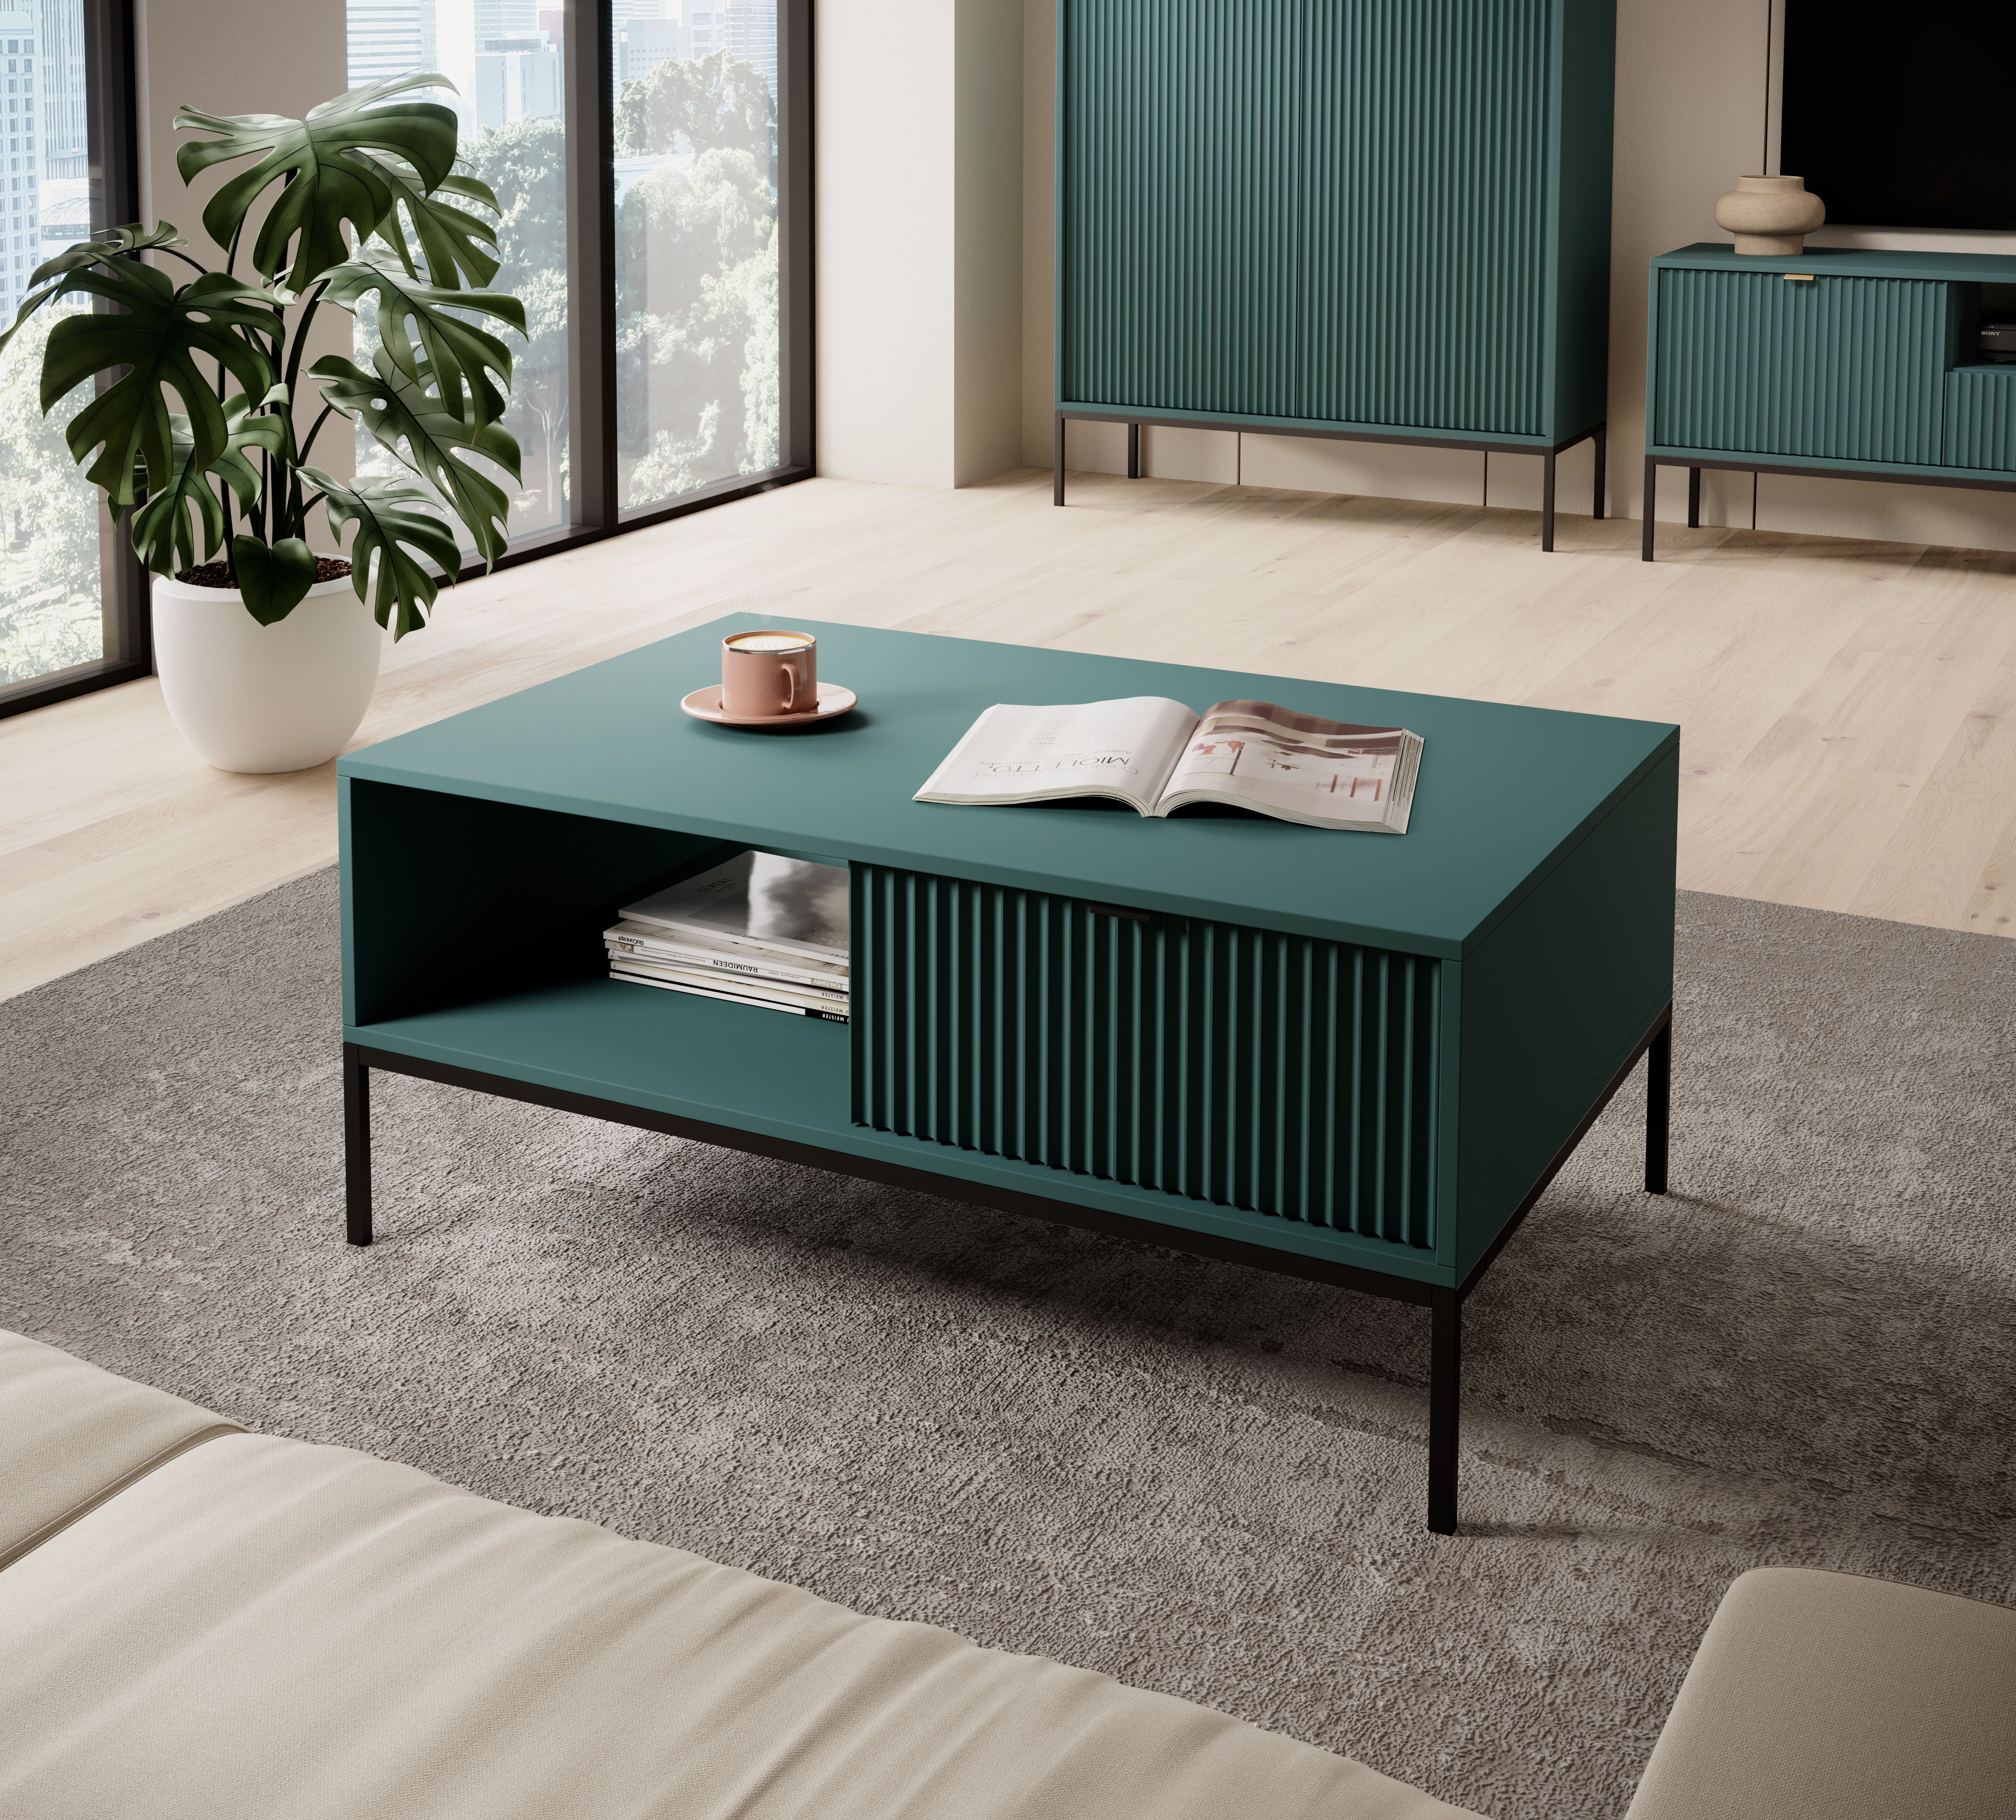 Table basse au design moderne Worthing 07, Couleur : Turquoise / Noir - Dimensions : 46 x 104 x 68 cm (H x L x P)